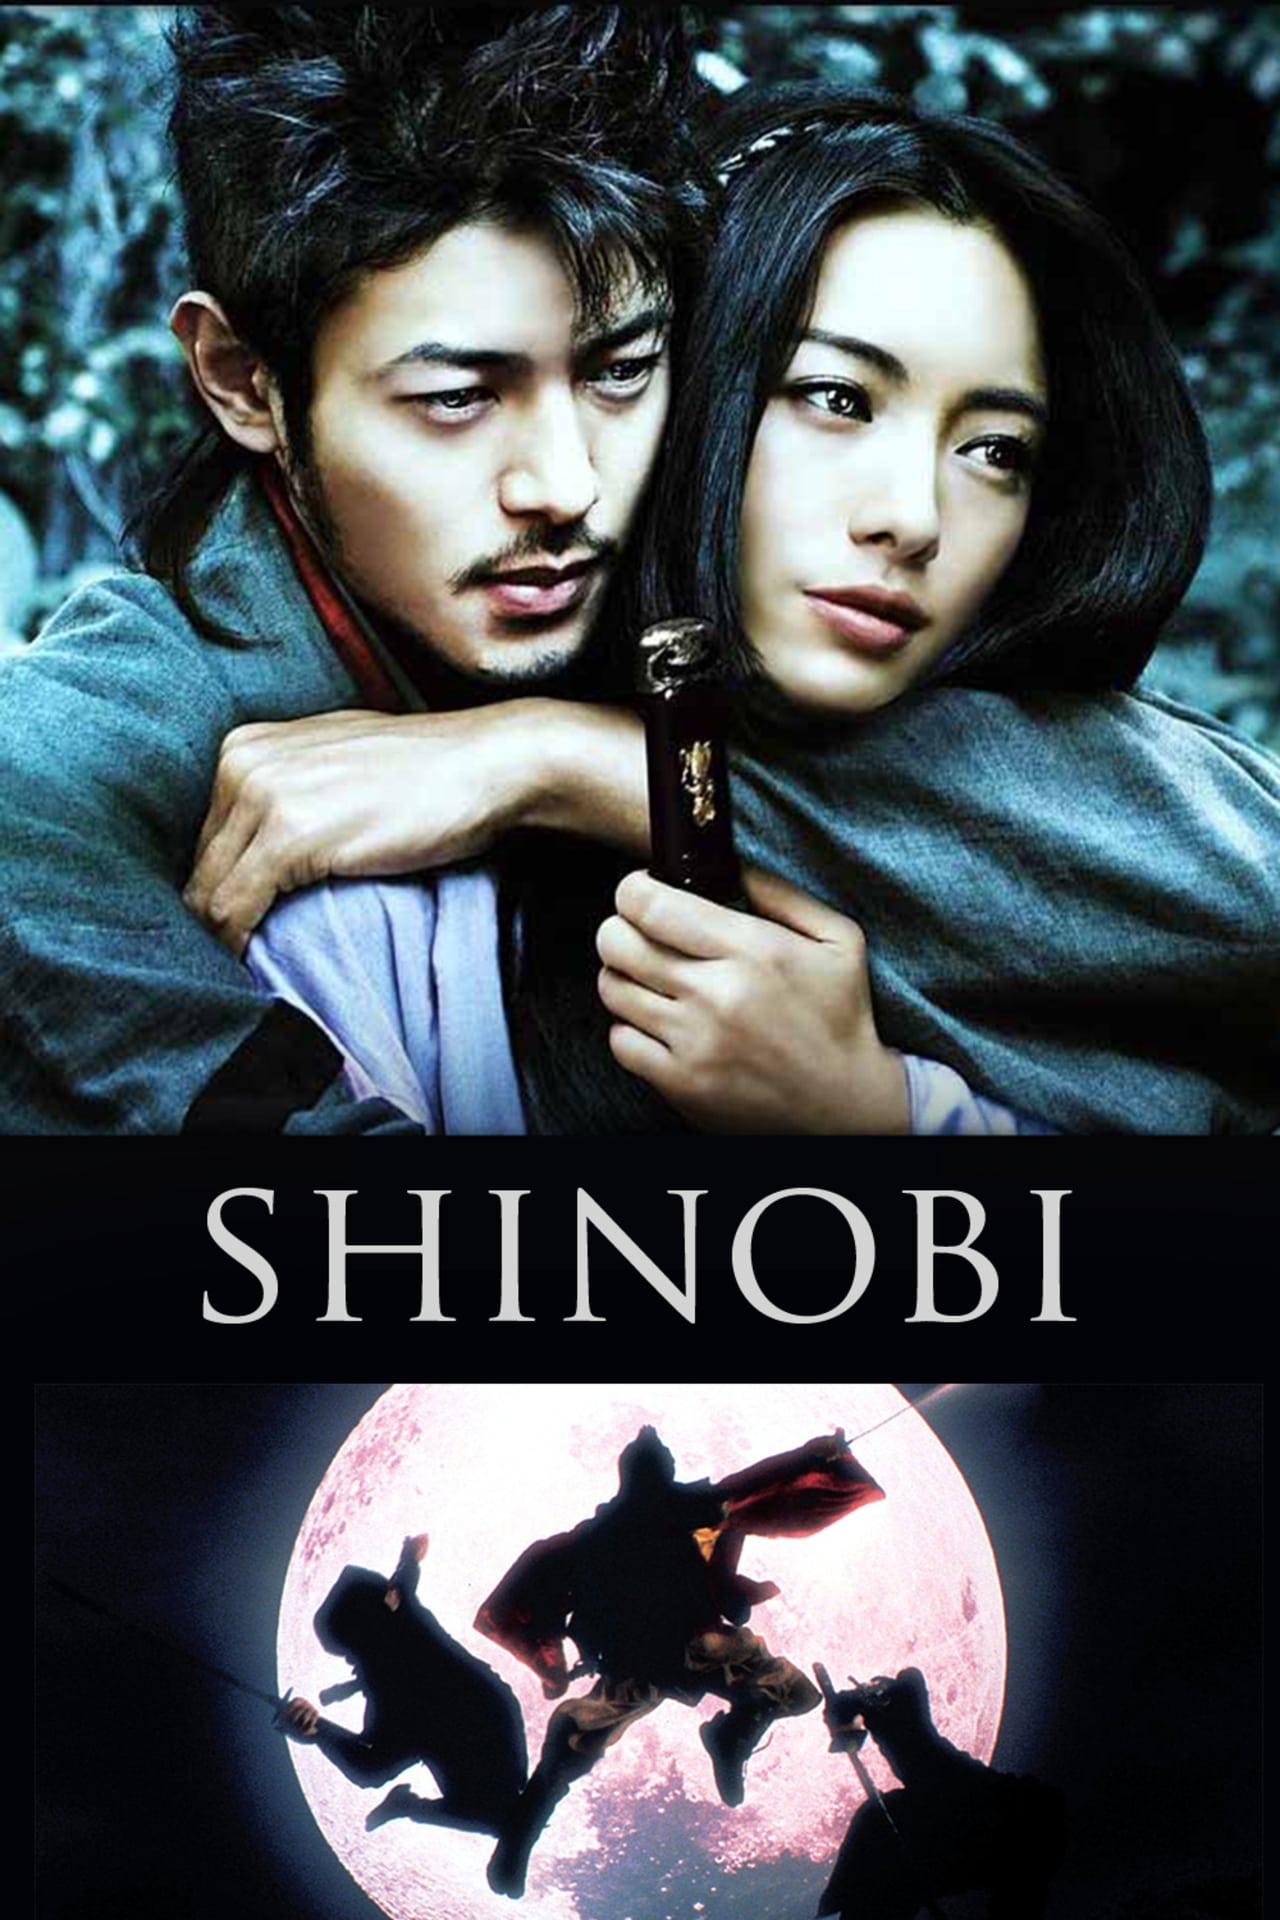 Shinobi: Heart Under Blade